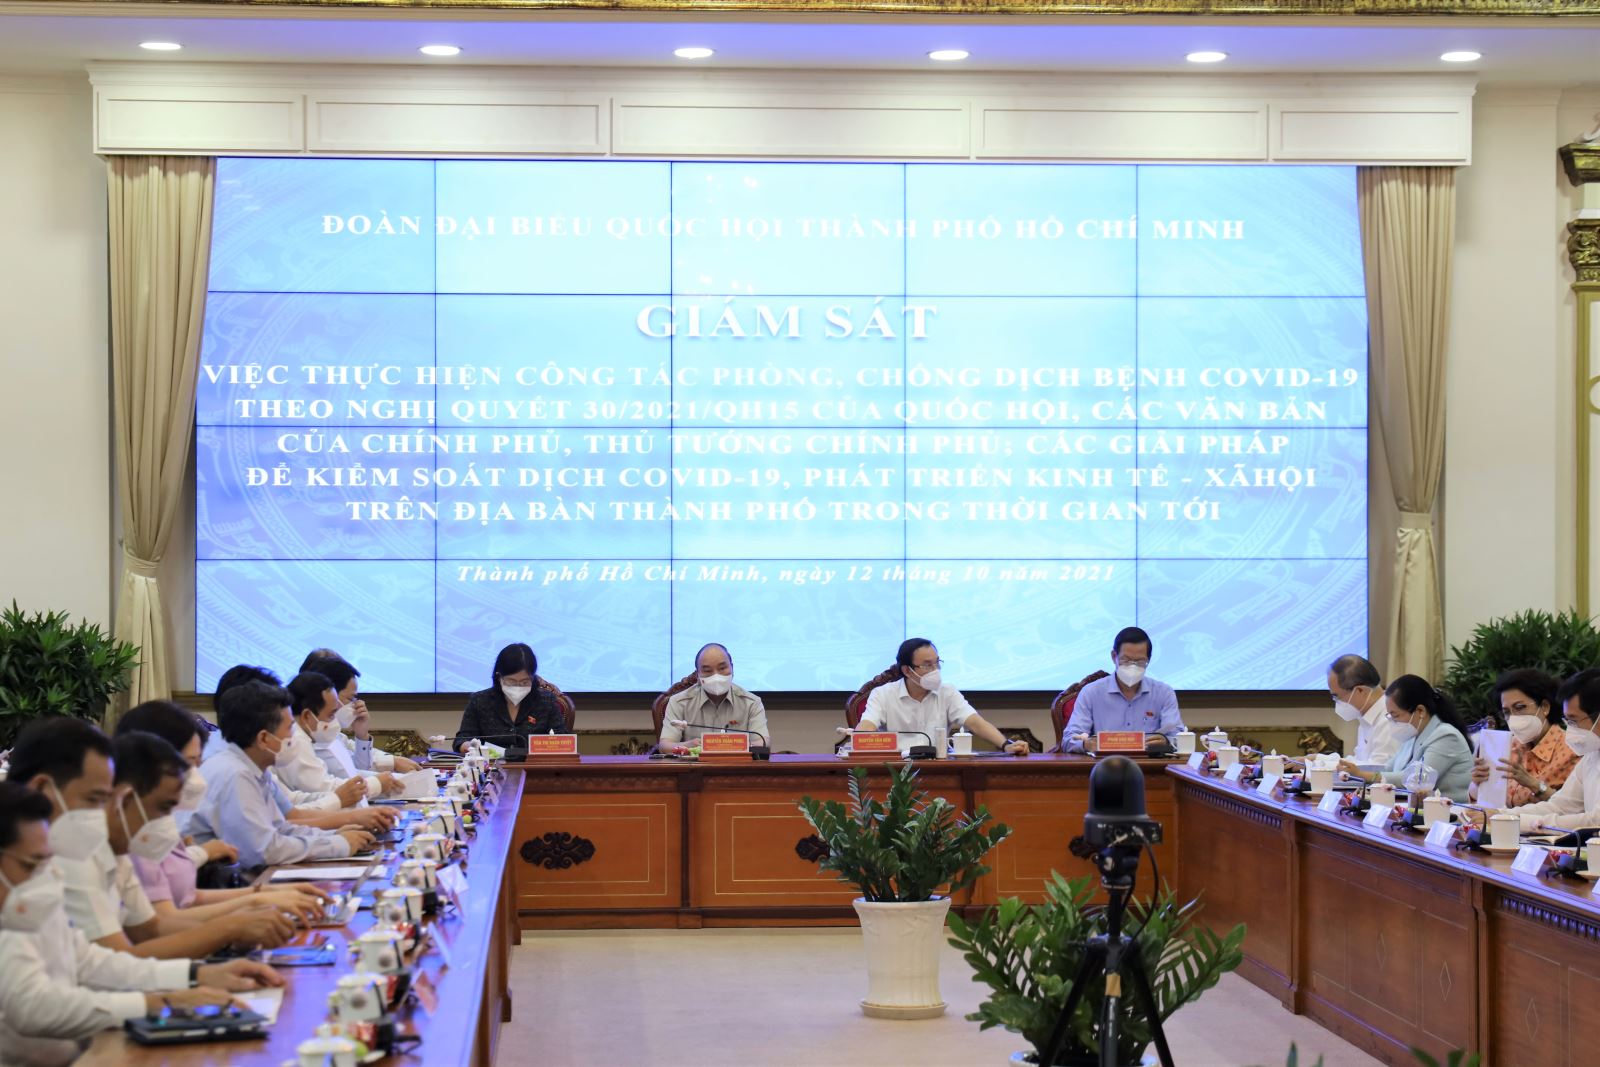 Đoàn ĐBQH TP. Hồ Chí Minh tổ chức giám sát việc thực hiện công tác phòng, chống dịch Covid-19